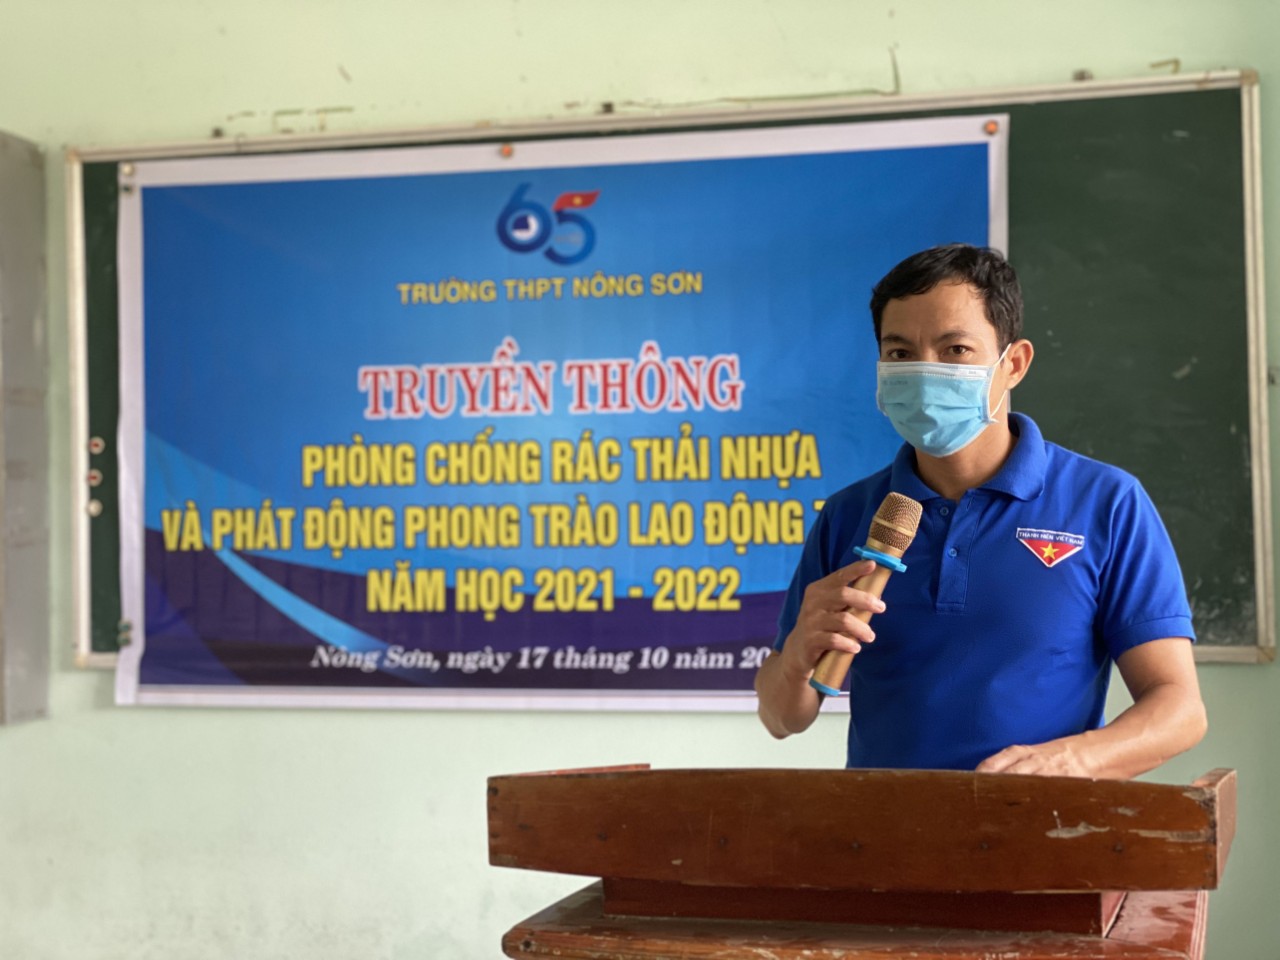 Đoàn trường THPT Nông Sơn tổ chức truyền thông phòng chống rác thải nhựa và phát động phong trào lao động